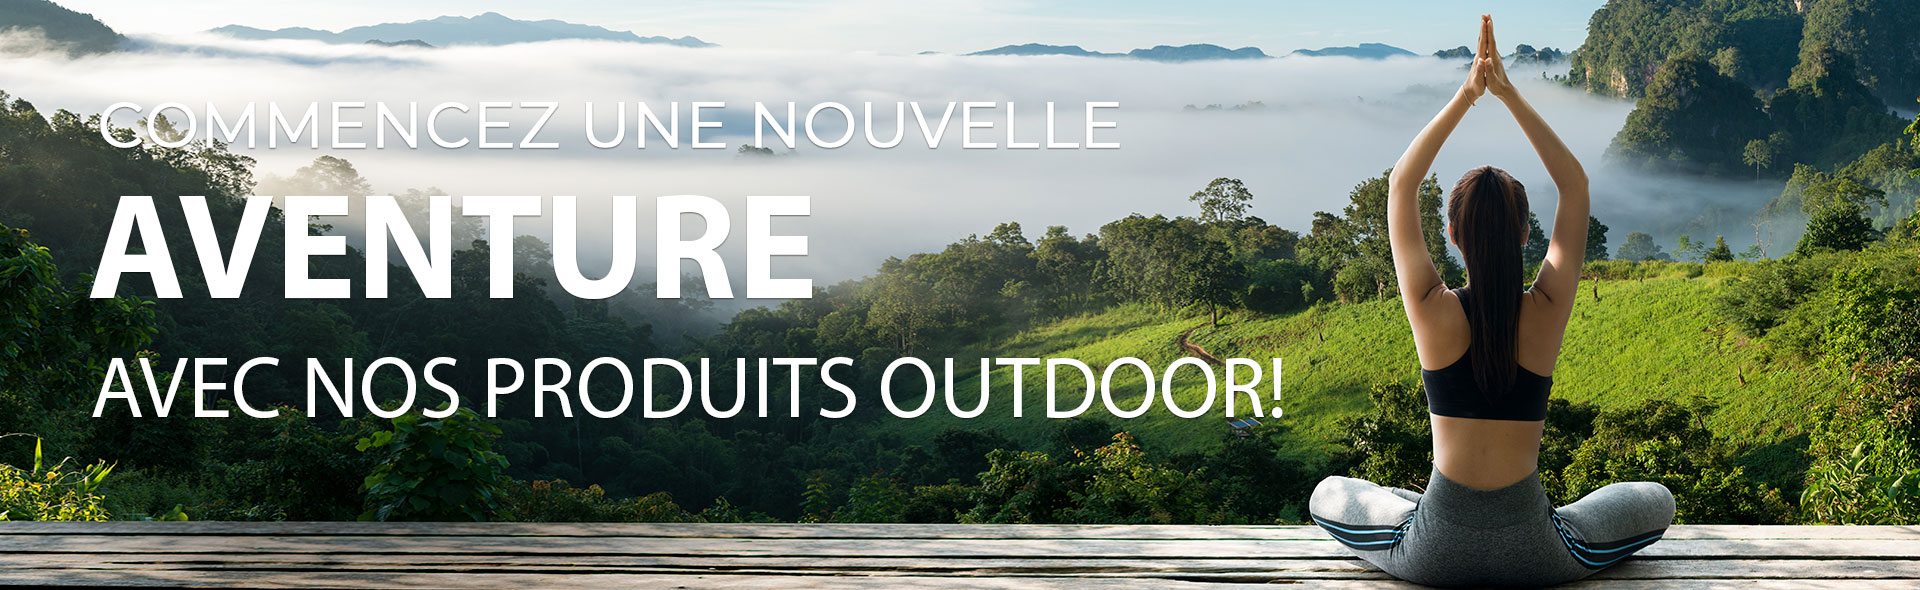 Commencez une nouvelle aventure avec nos produits outdoor!